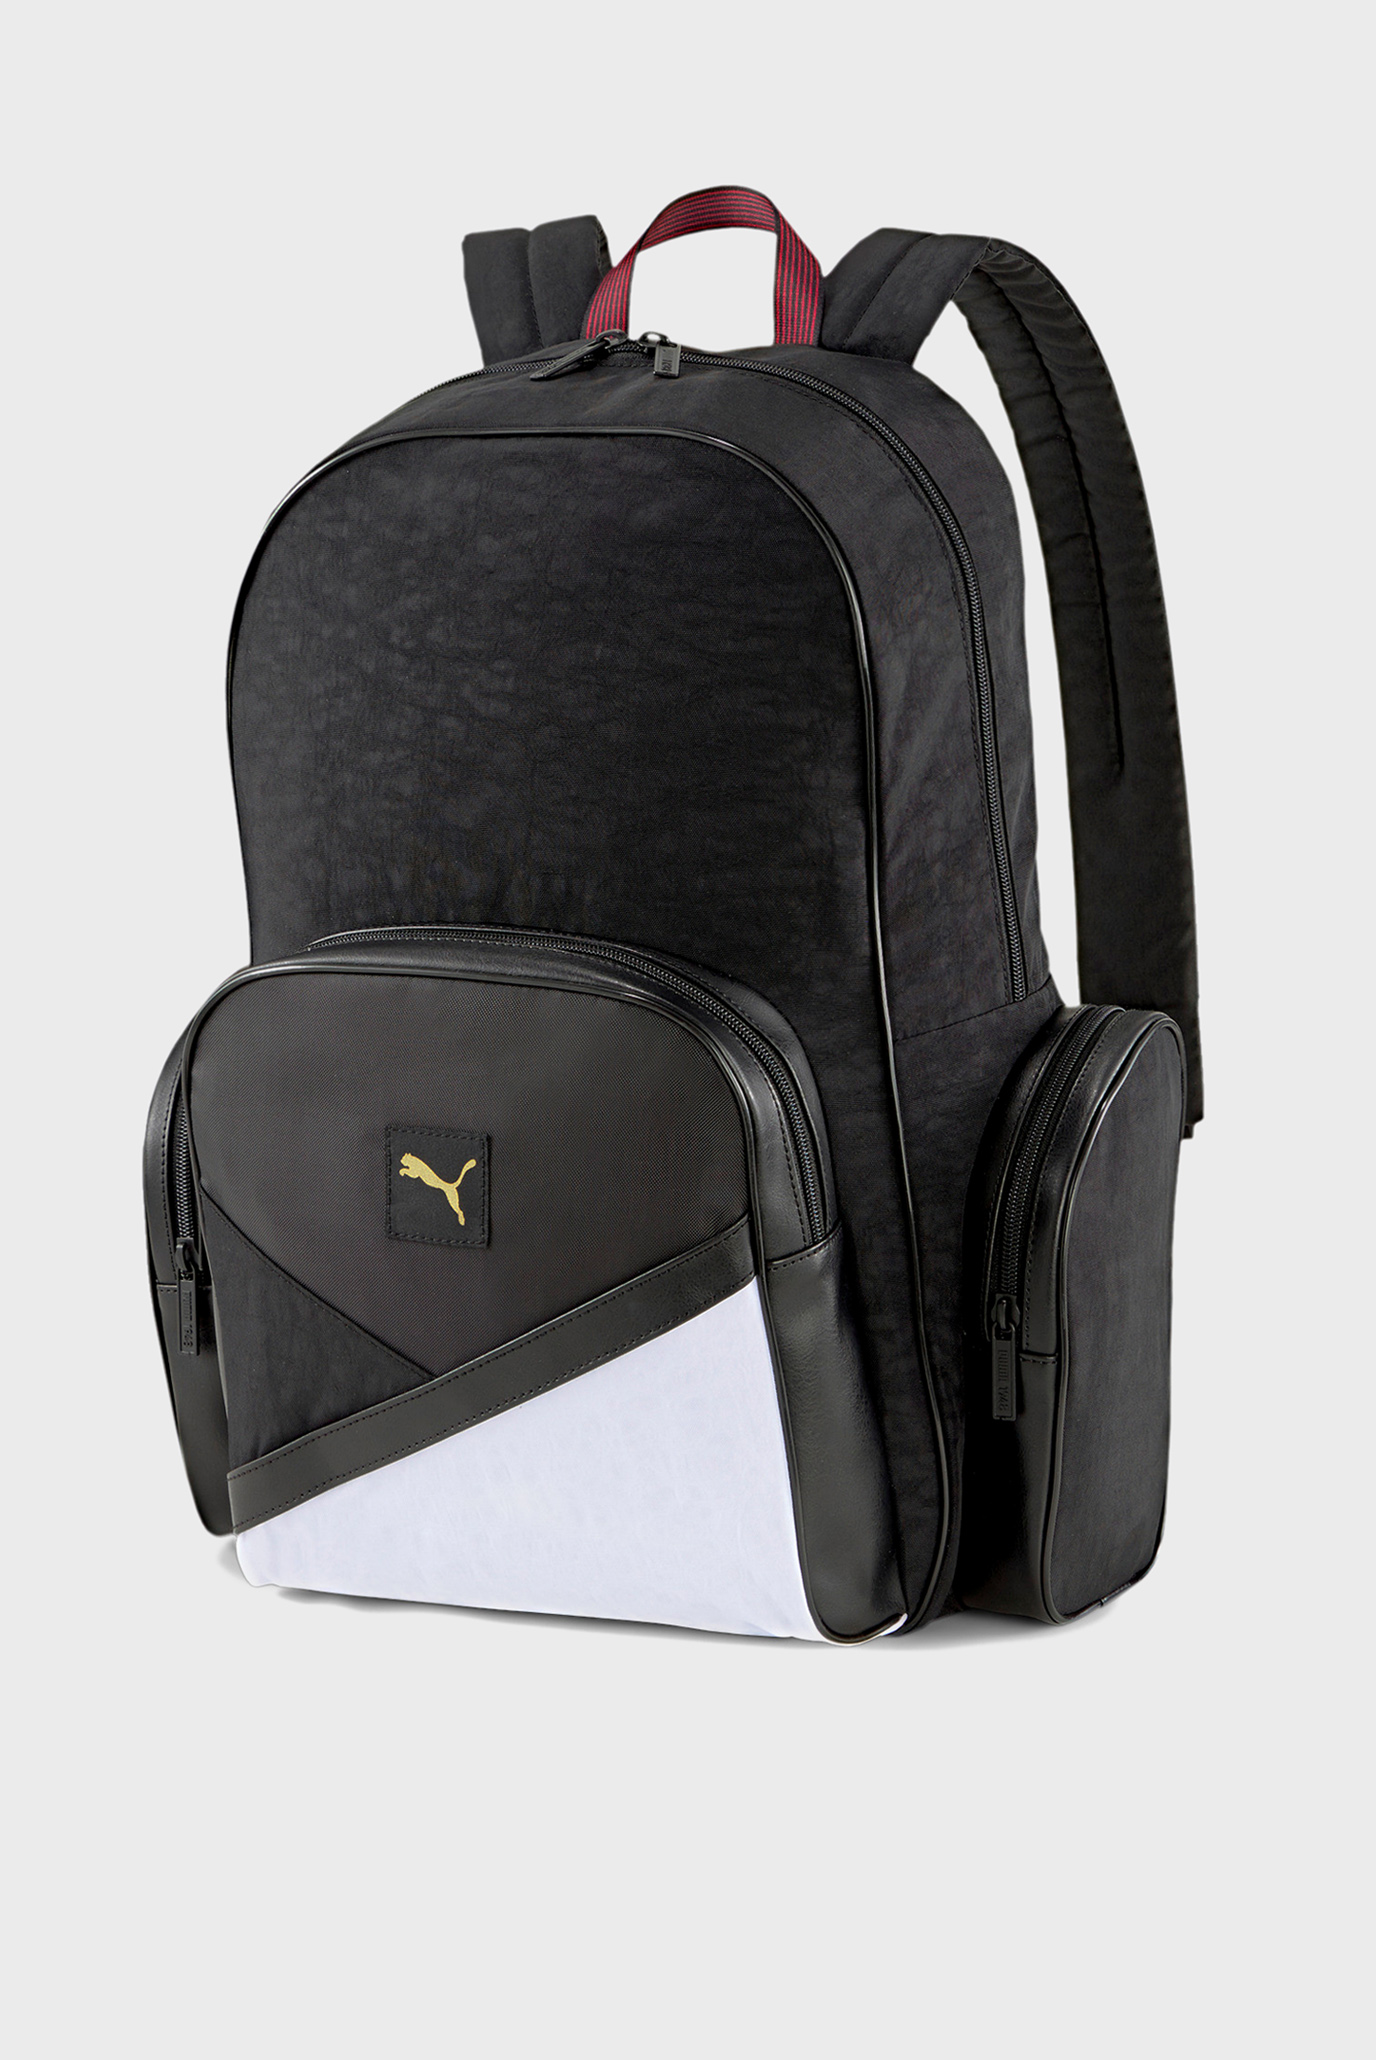 Рюкзак AS Backpack 1